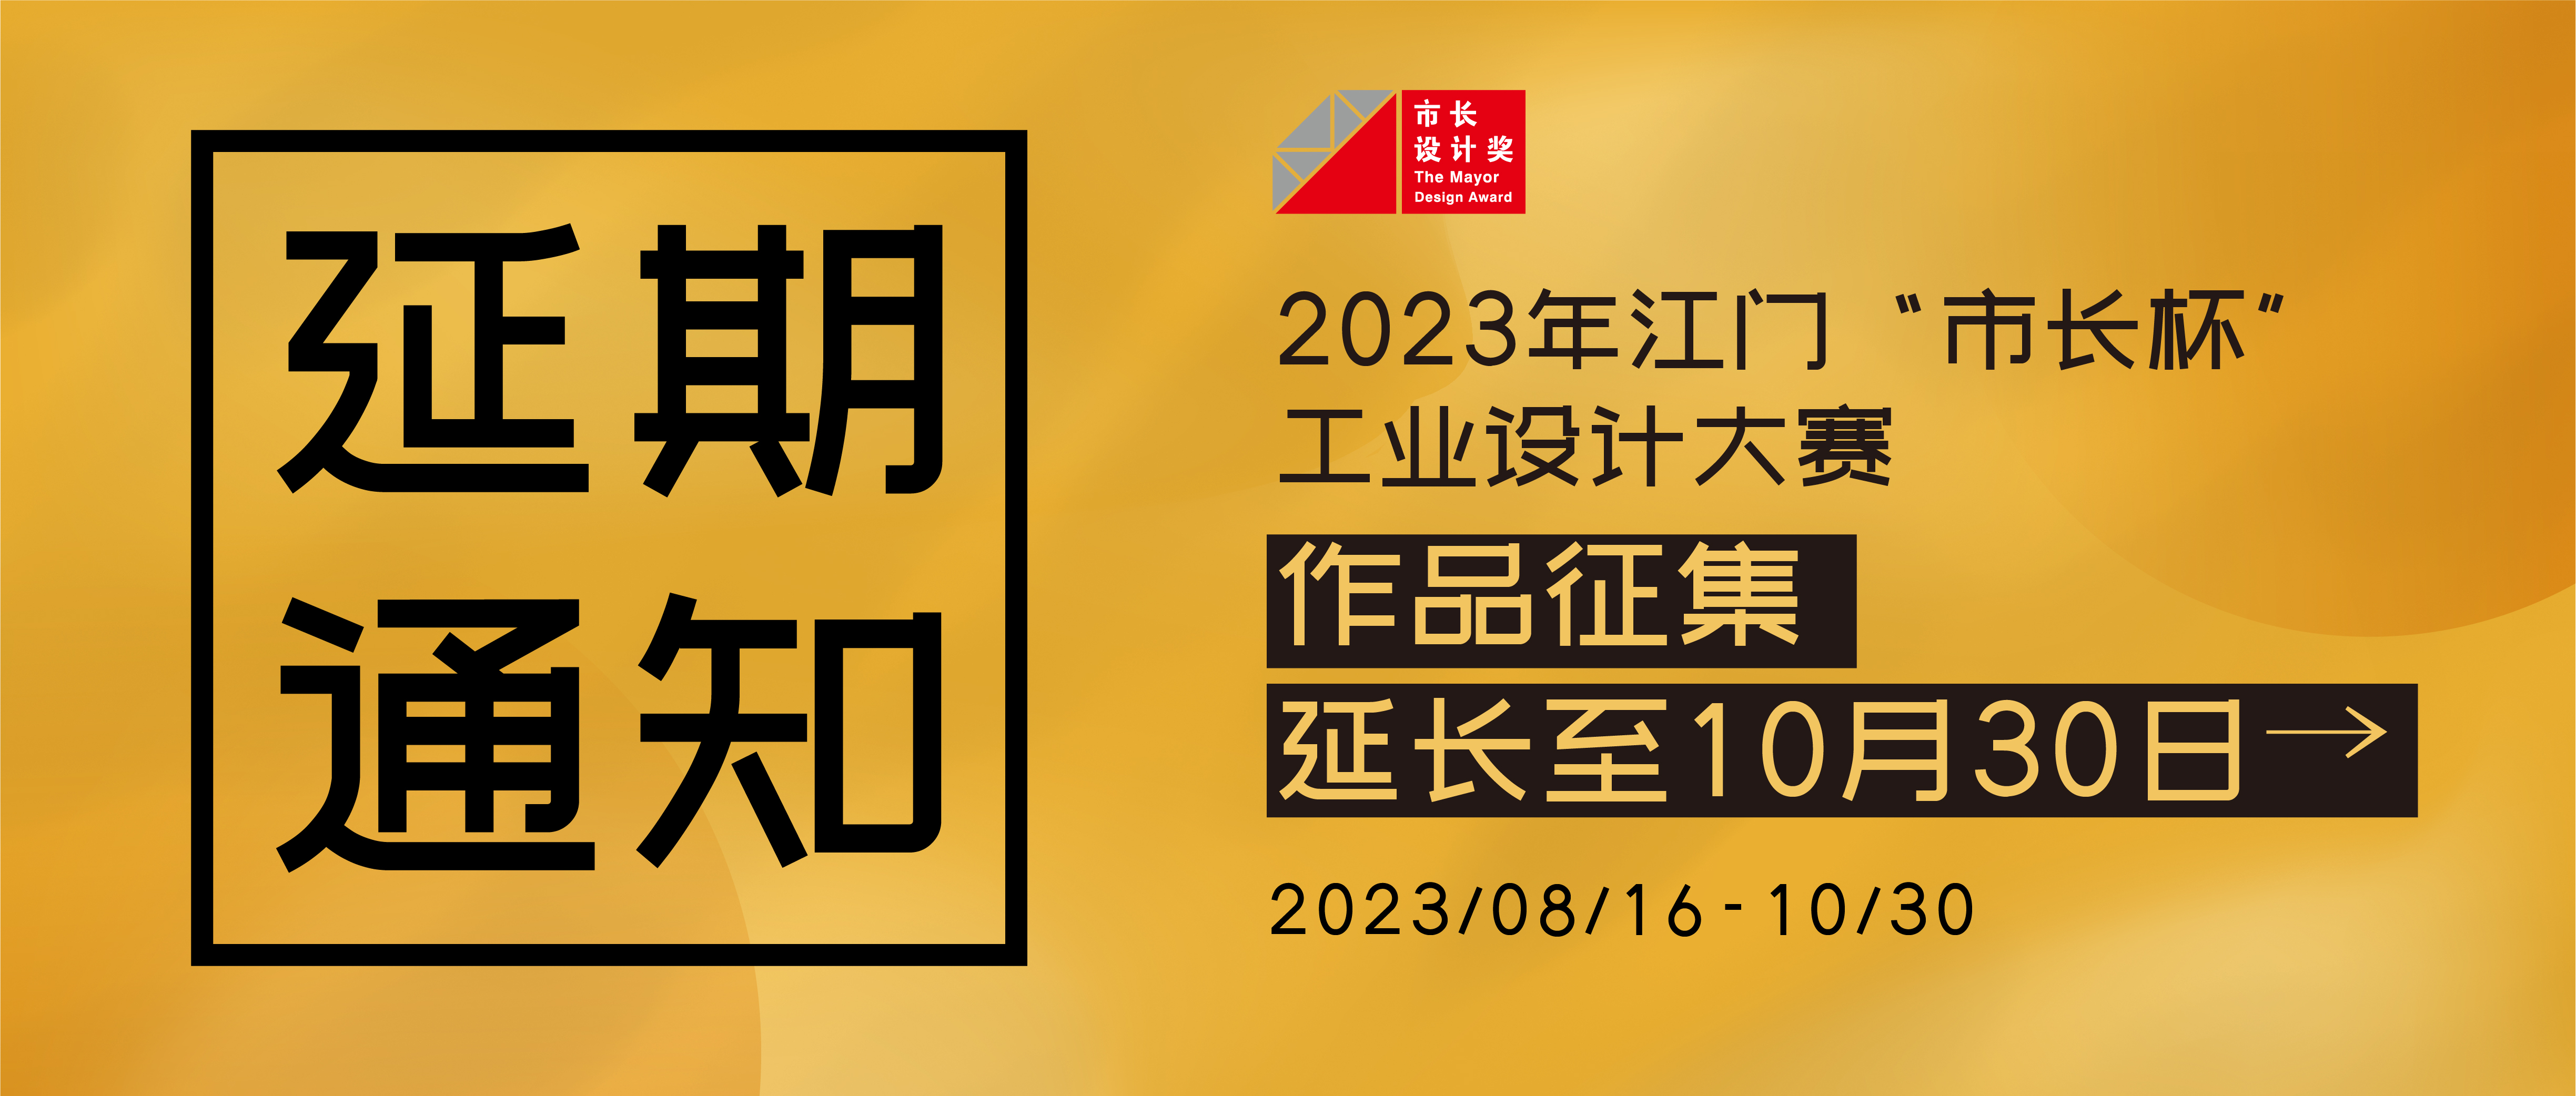 延期通知丨2023年江门“市长杯”工业设计大赛作品征集延长至10月30日